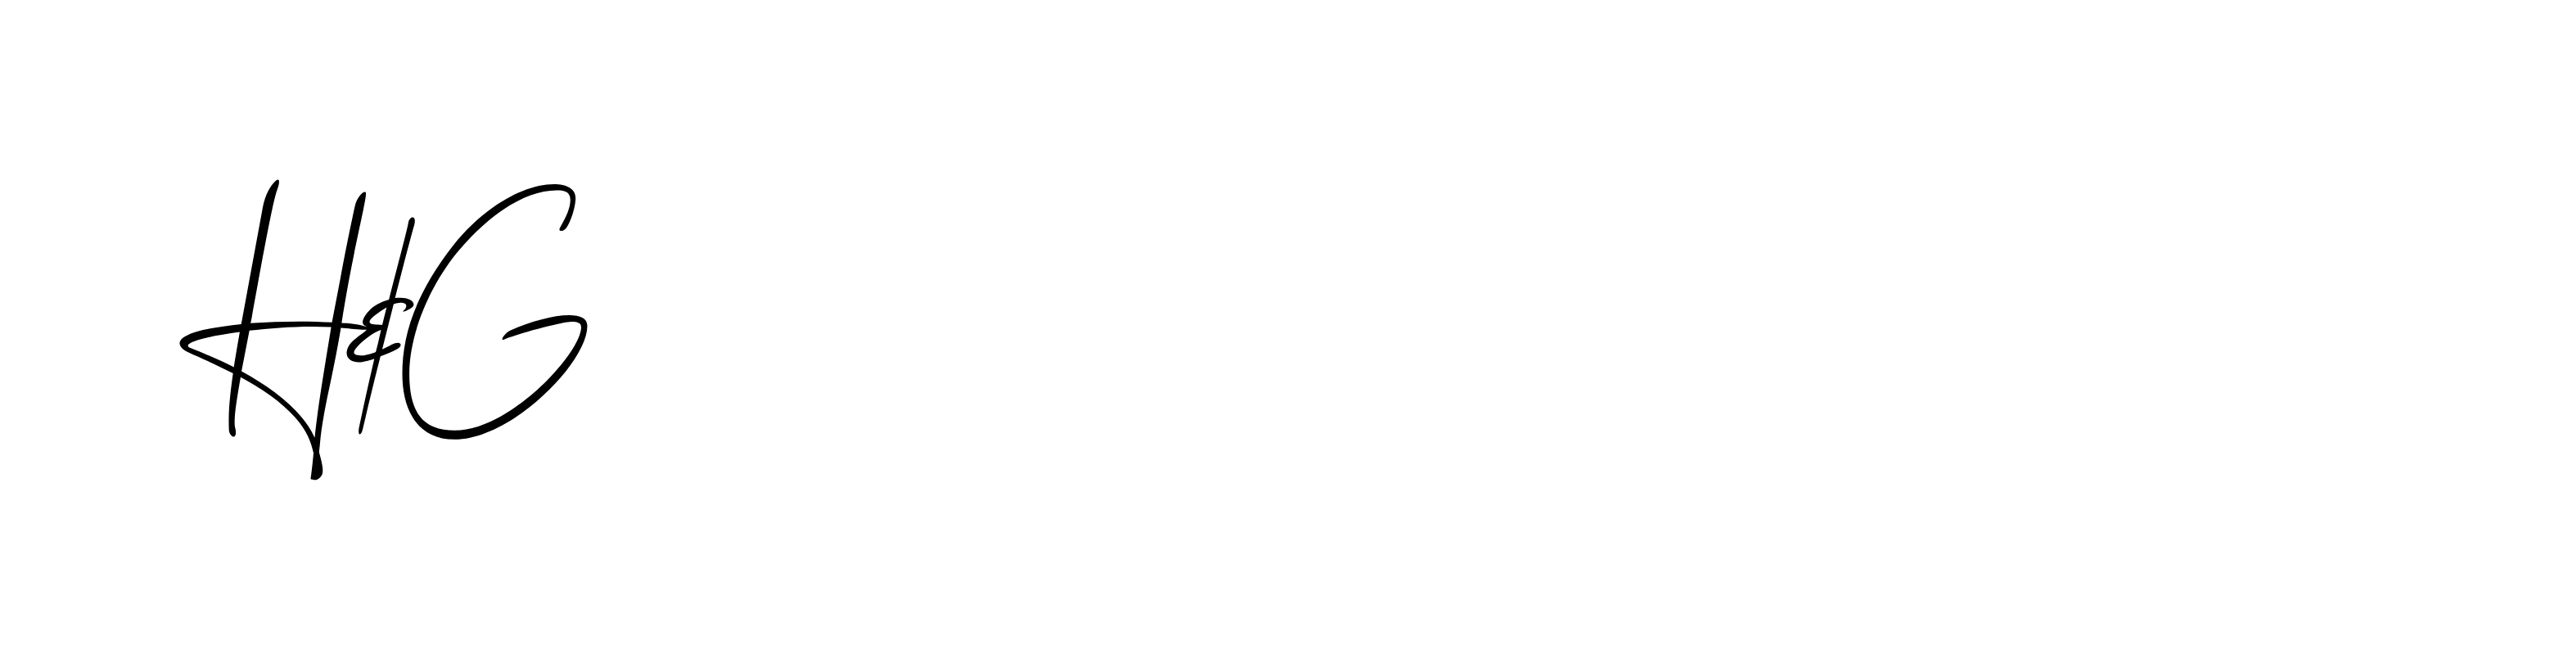 Henderson & Gardner